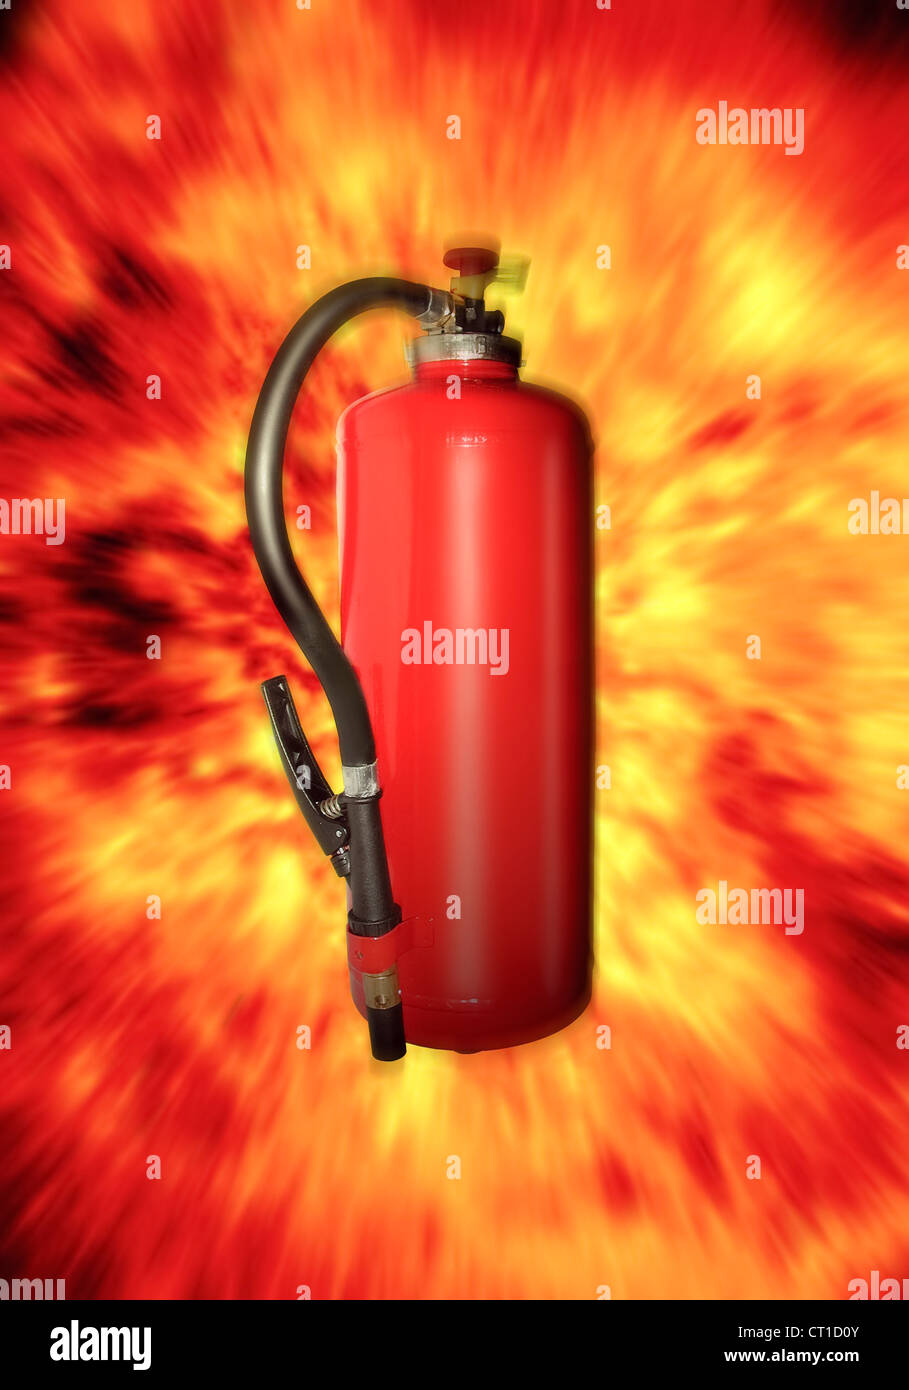 Feuerlöscher mit Flammen - Explosion Stock Photo